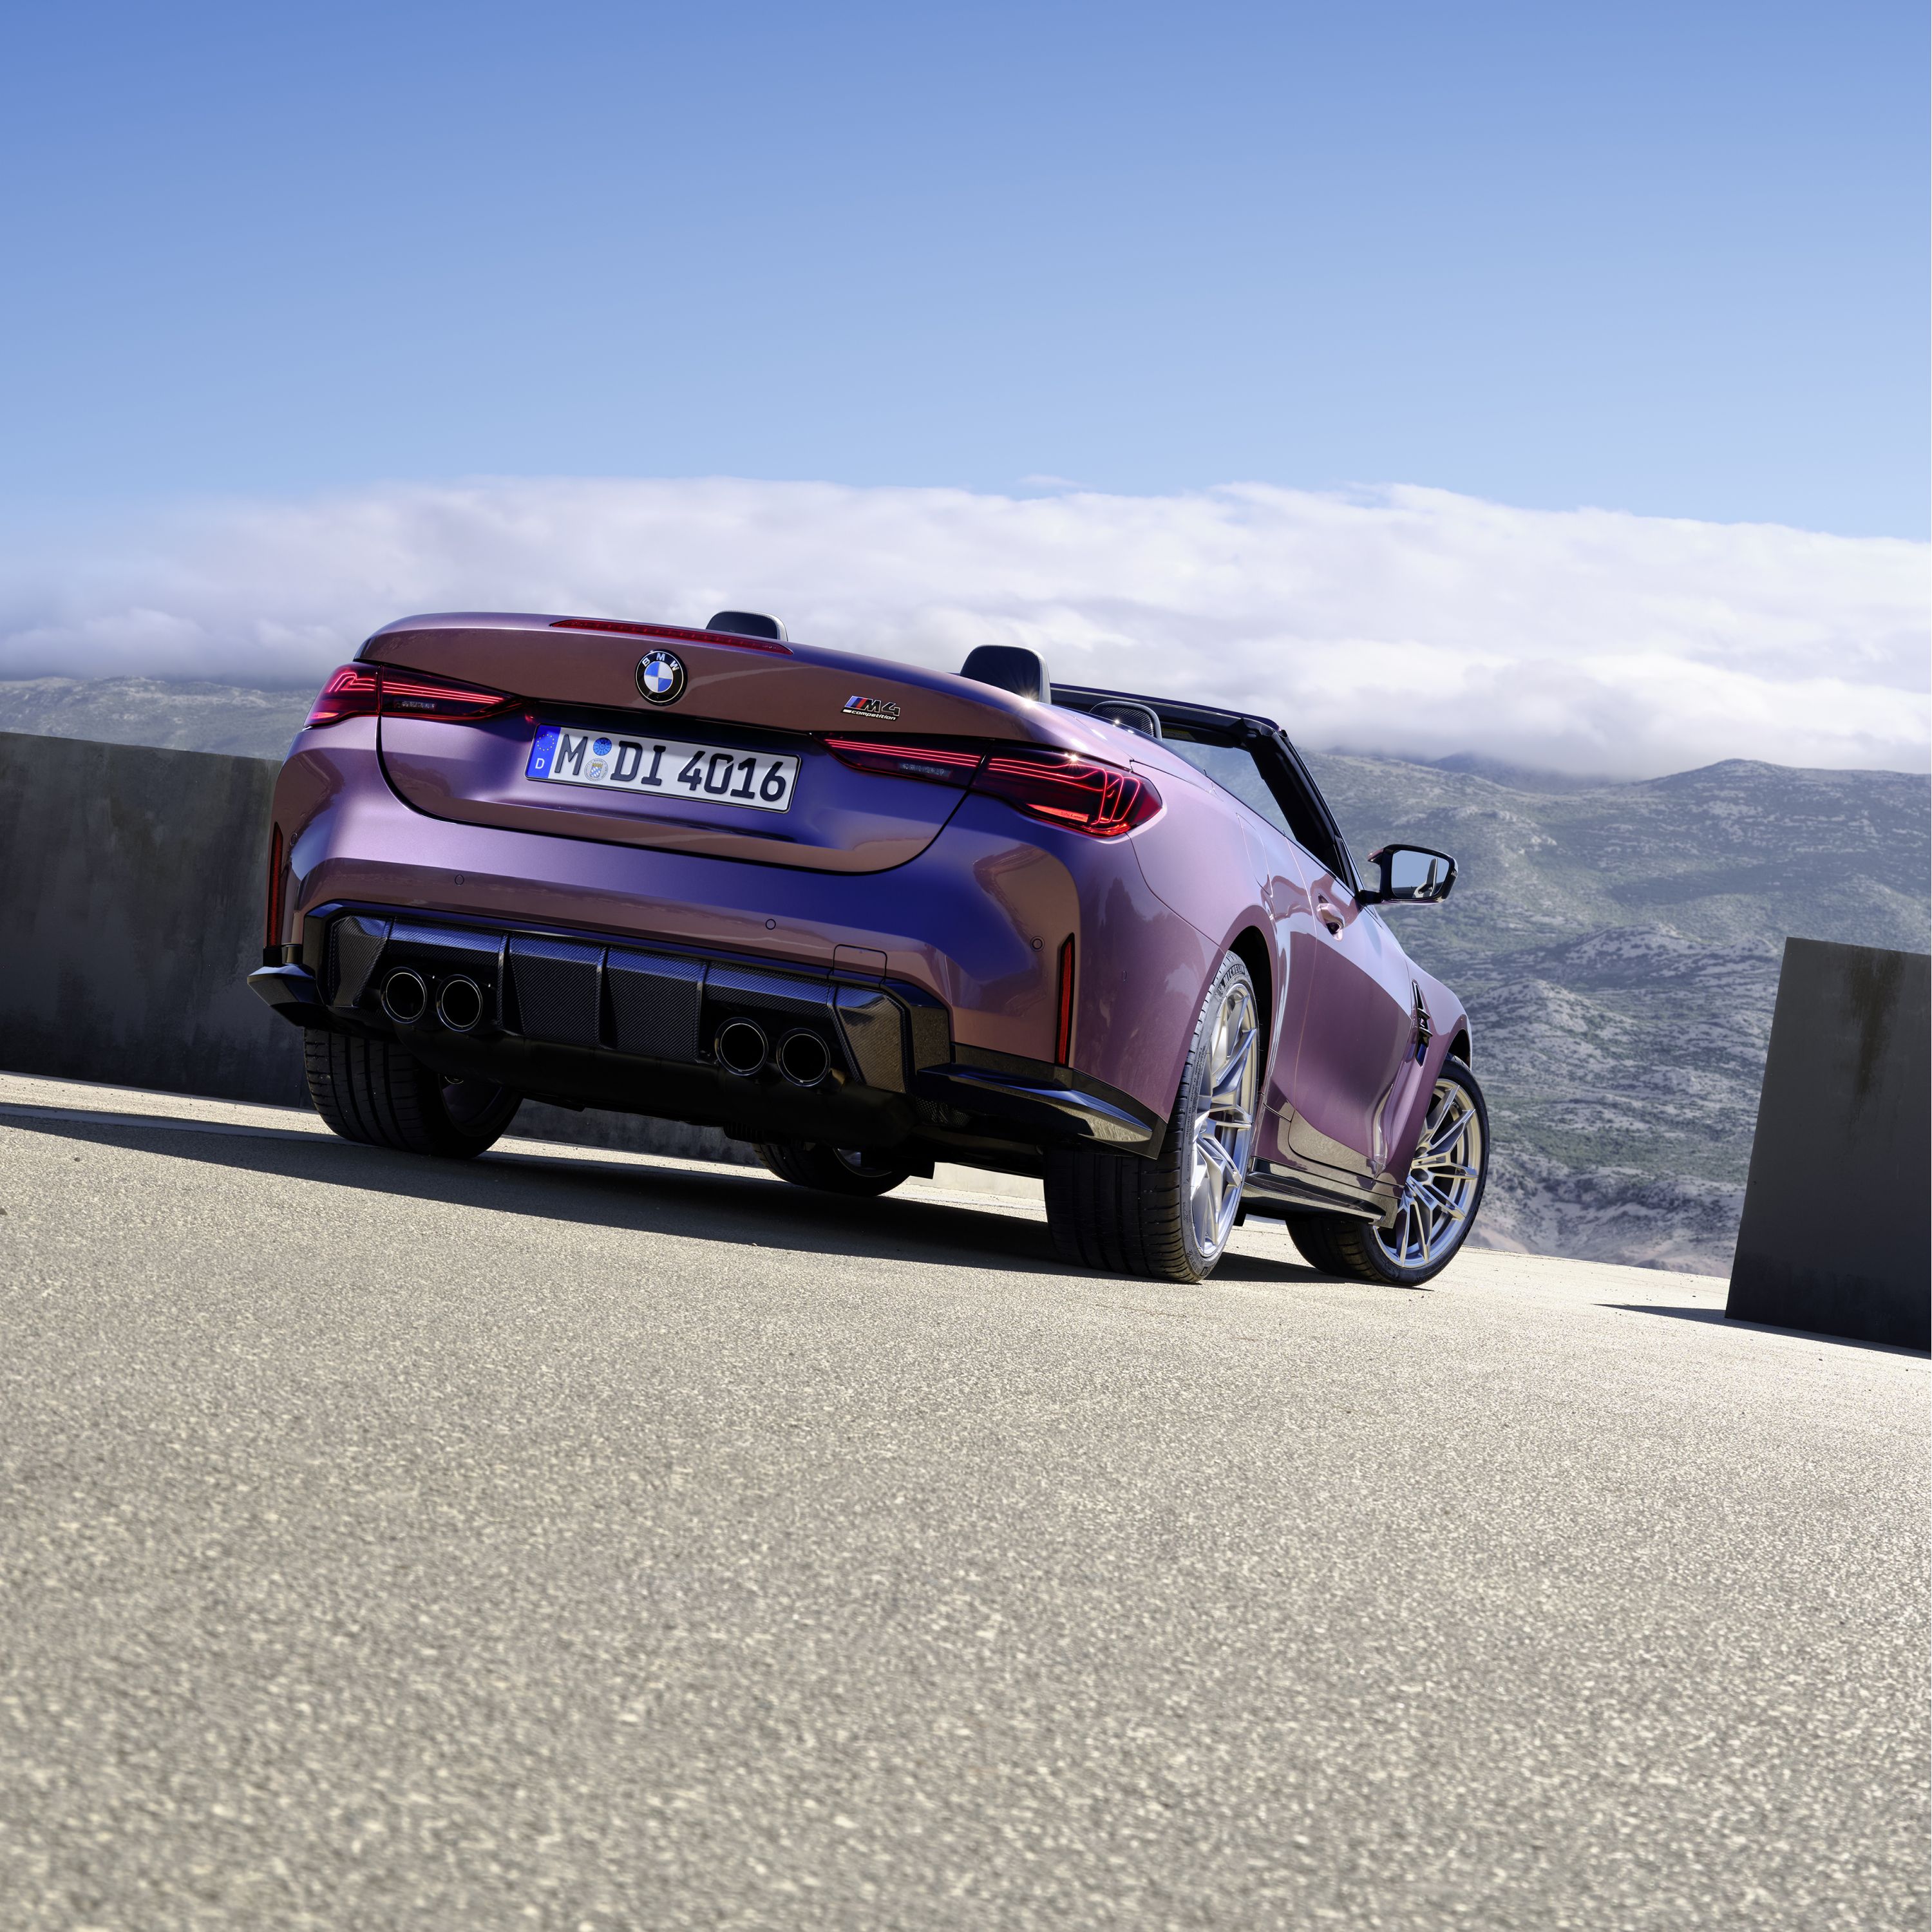 Finanziamento e leasing modelli M BMW Serie 4 Cabrio